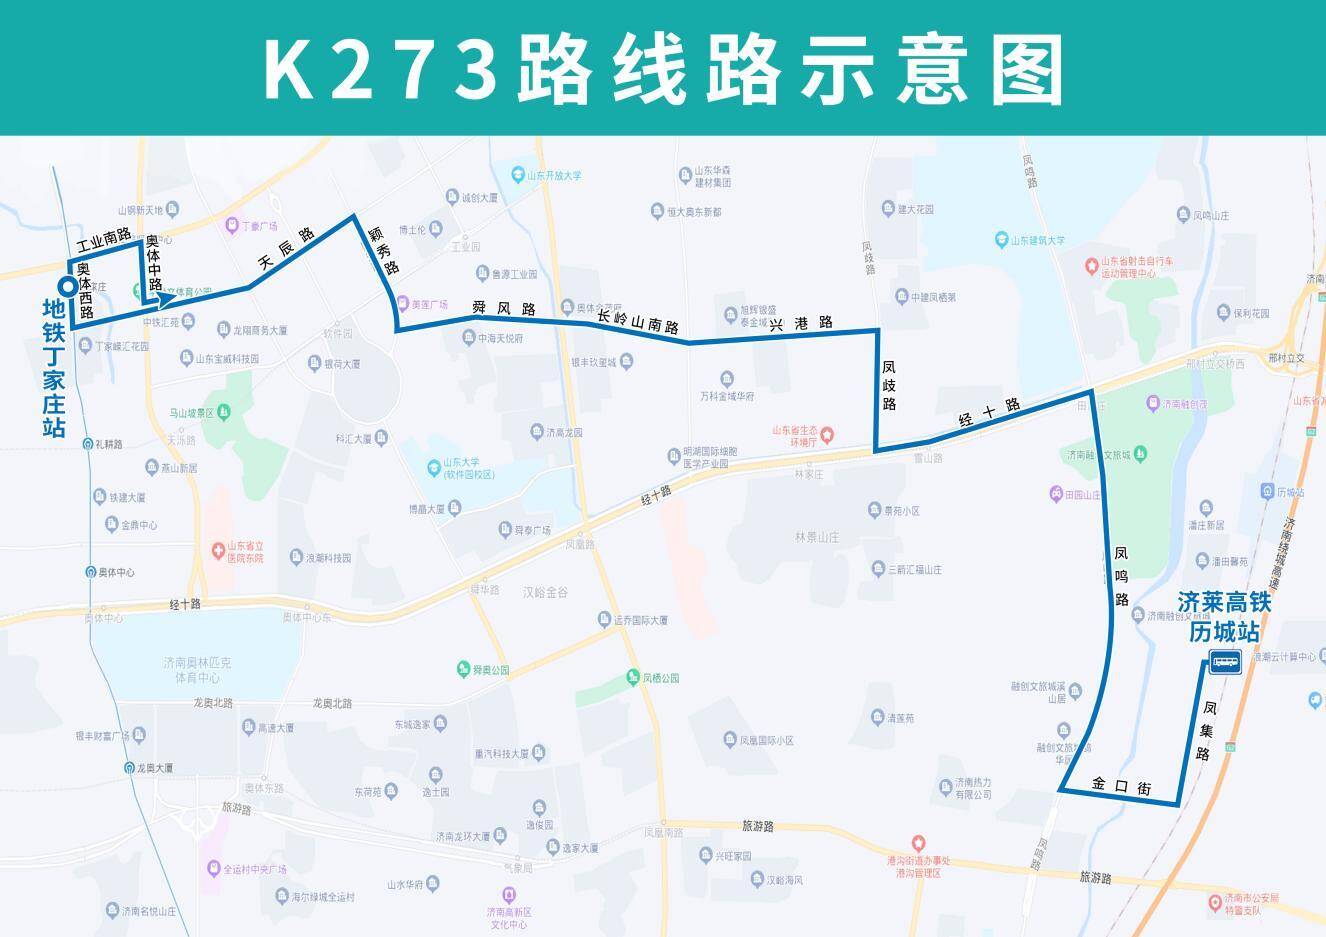 4月11日起济南K273路公交试运行 将方便沿线小区与经十路等交通走廊衔接